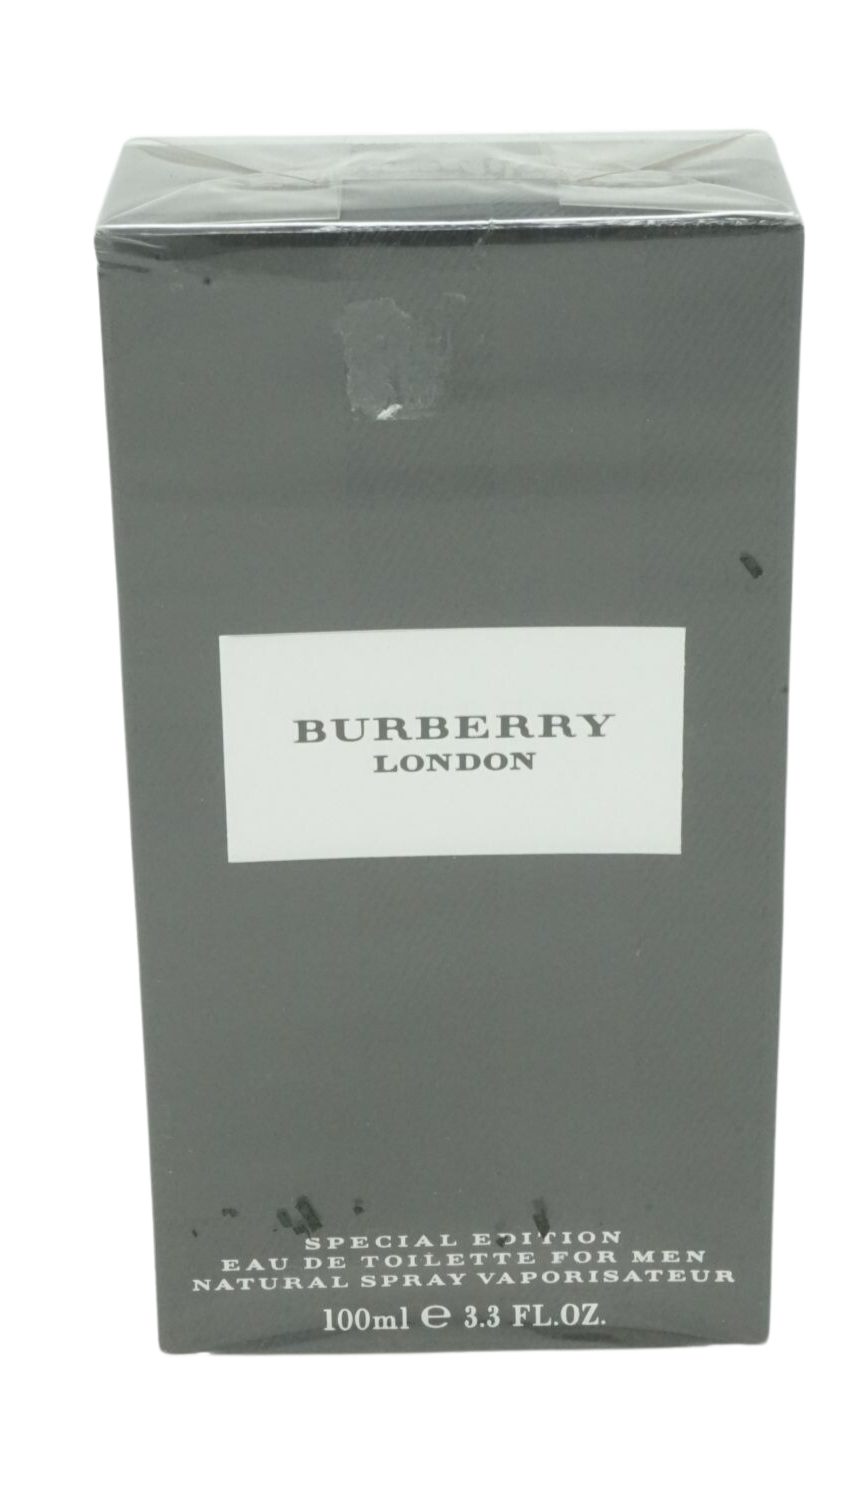 de Burberry Toilette Eau BURBERRY London For Toilette Special Men 100ml Eau Edition de